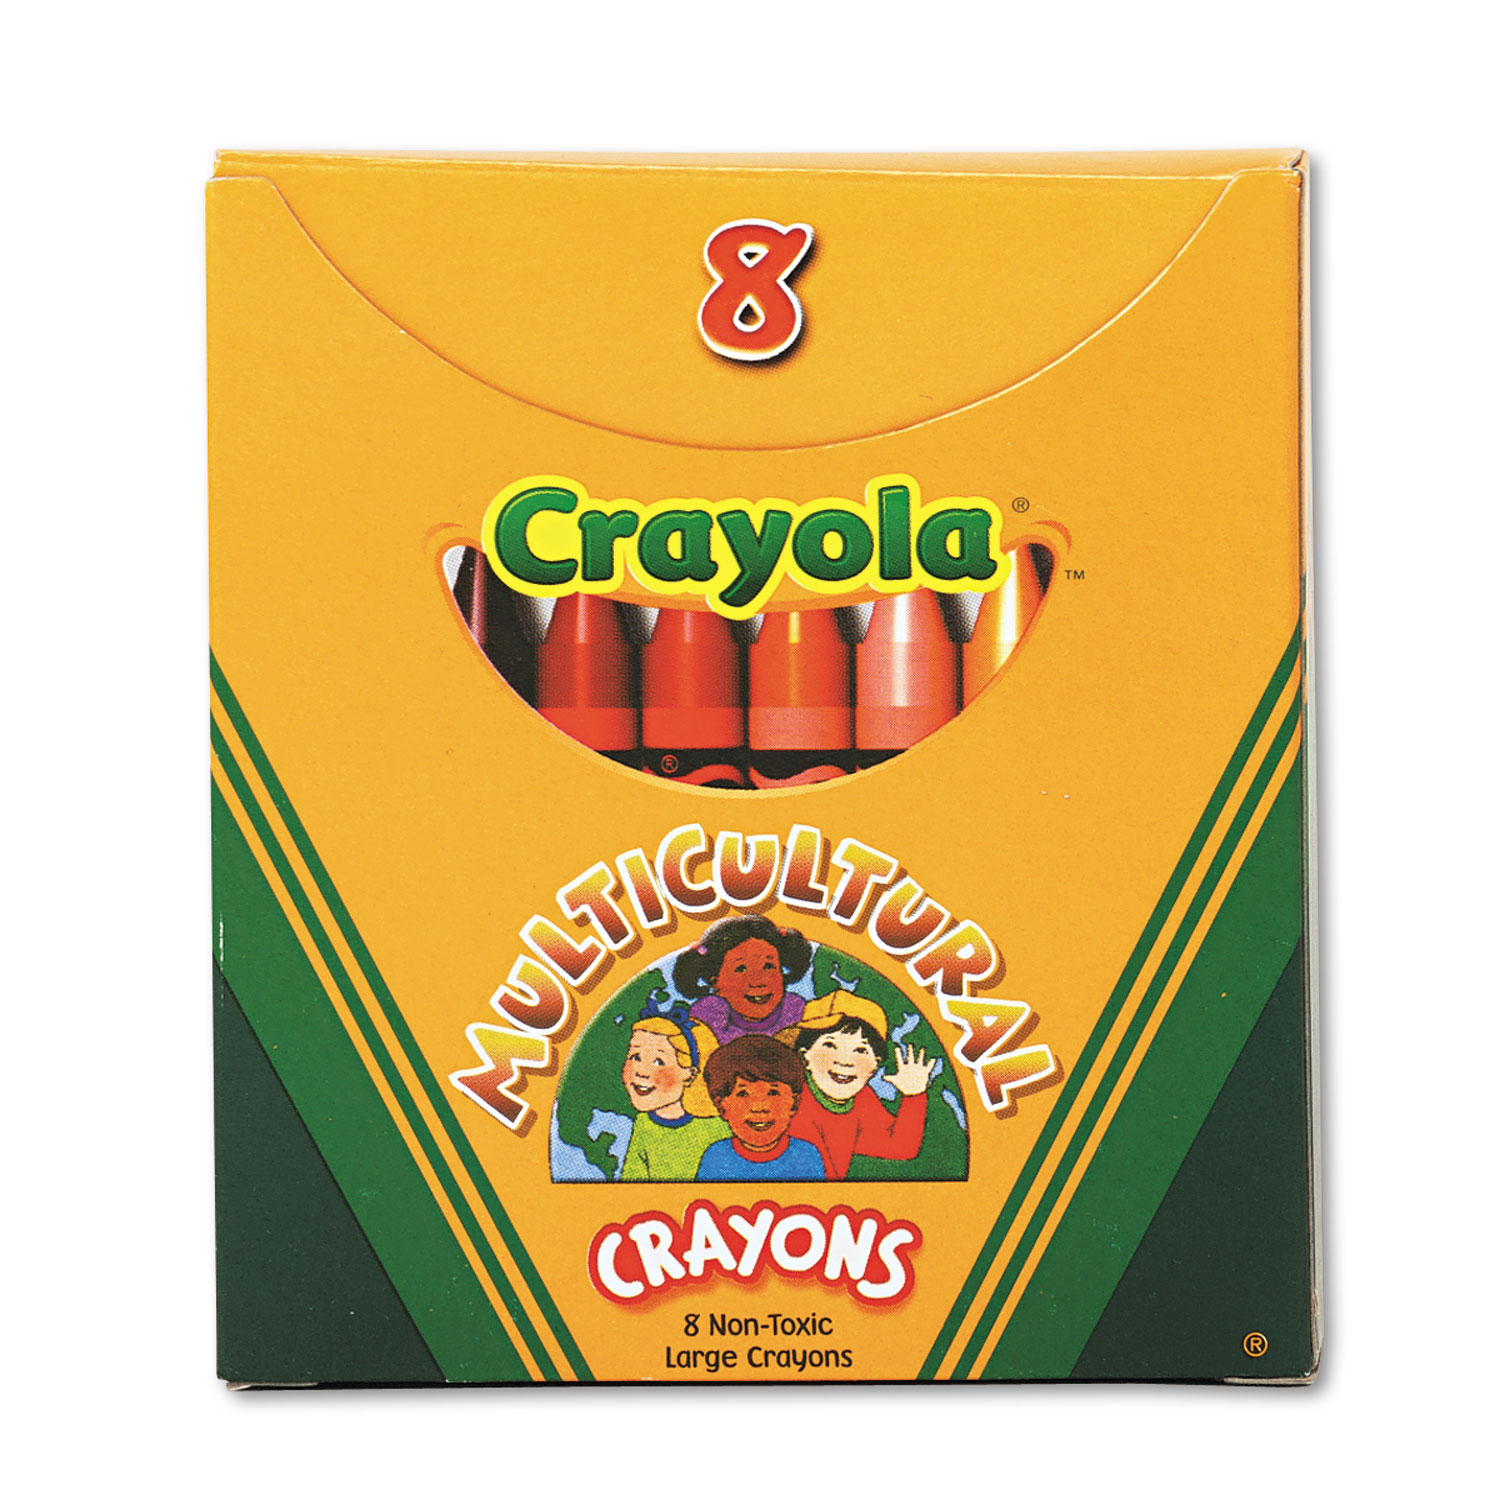 Crayola So Big Crayons 8 Colors Non-Toxic